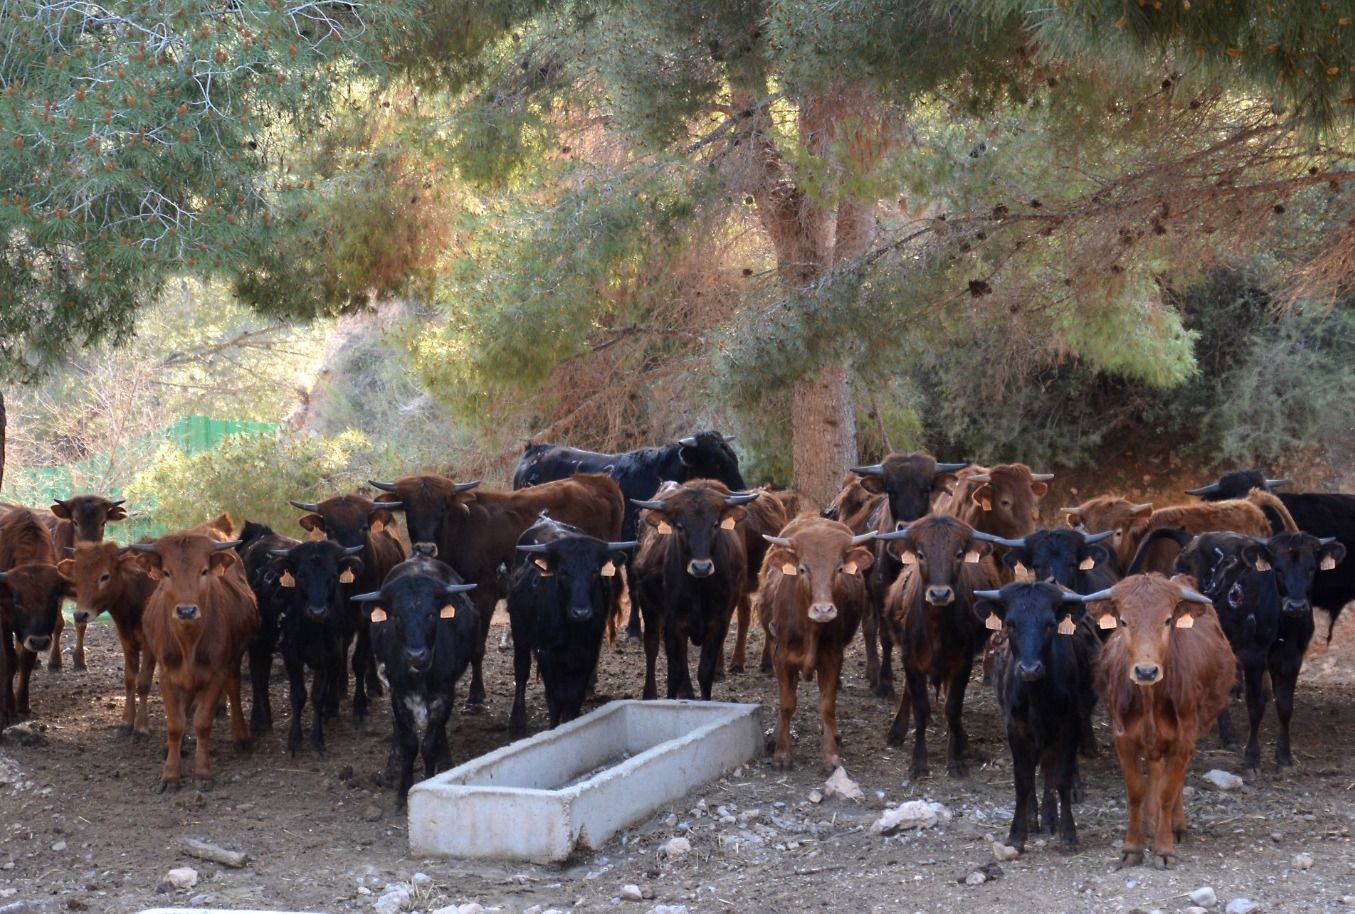 Naturaleza y plenitud: así viven los toros de la ganadería de Daniel Ramos